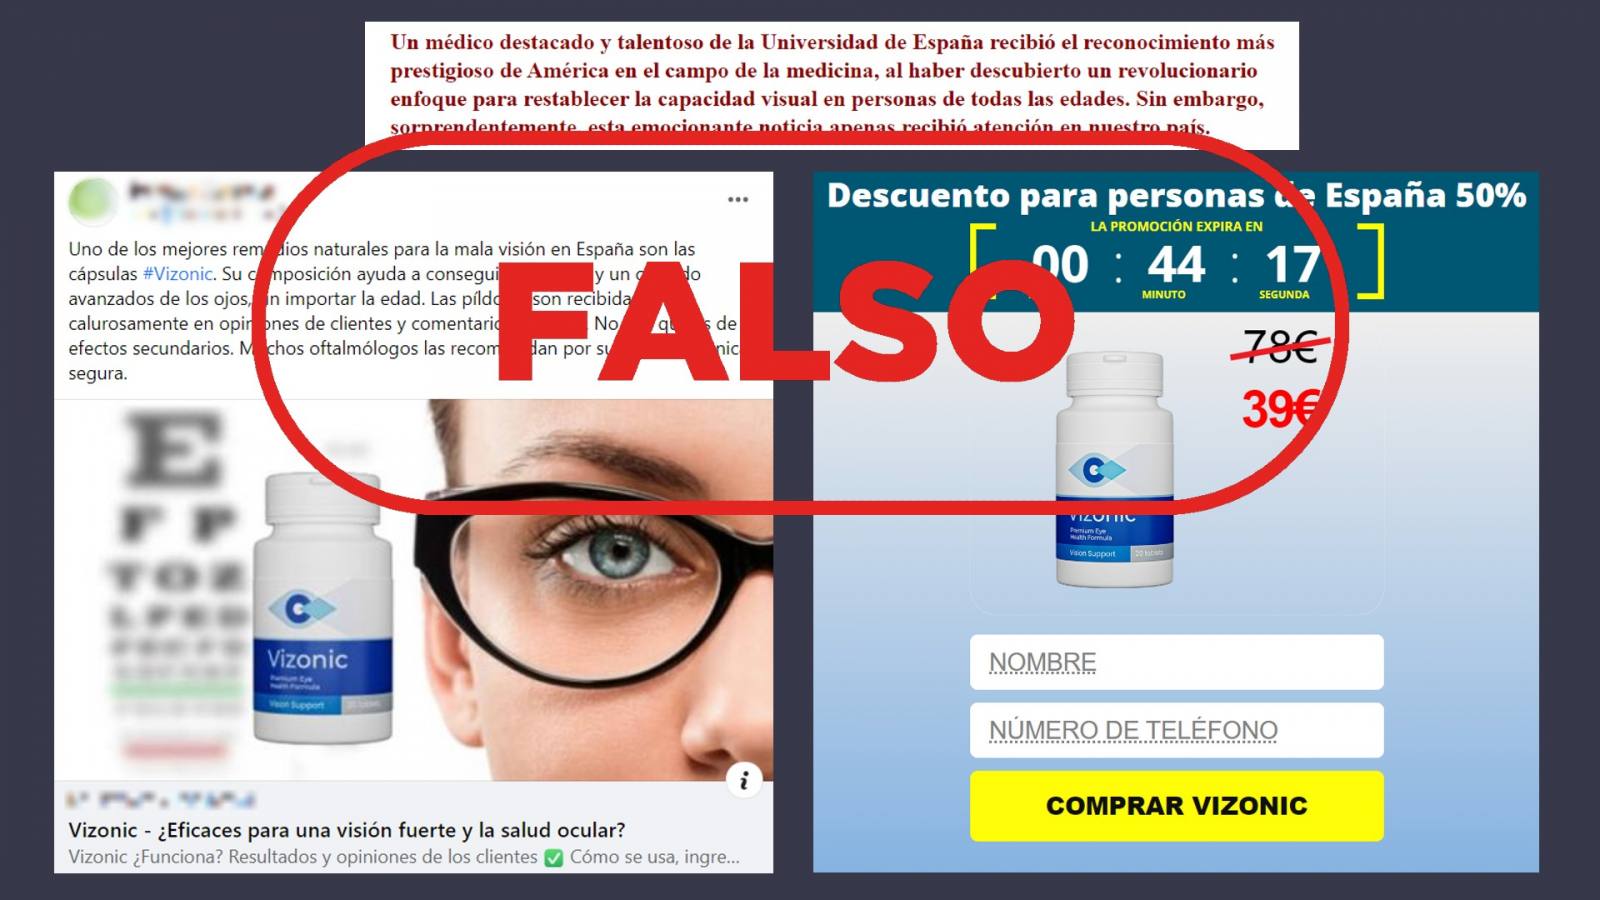 El falso medicamento Vizonic promocionado en Facebook y en una página web. Con el sello falso en rojo.